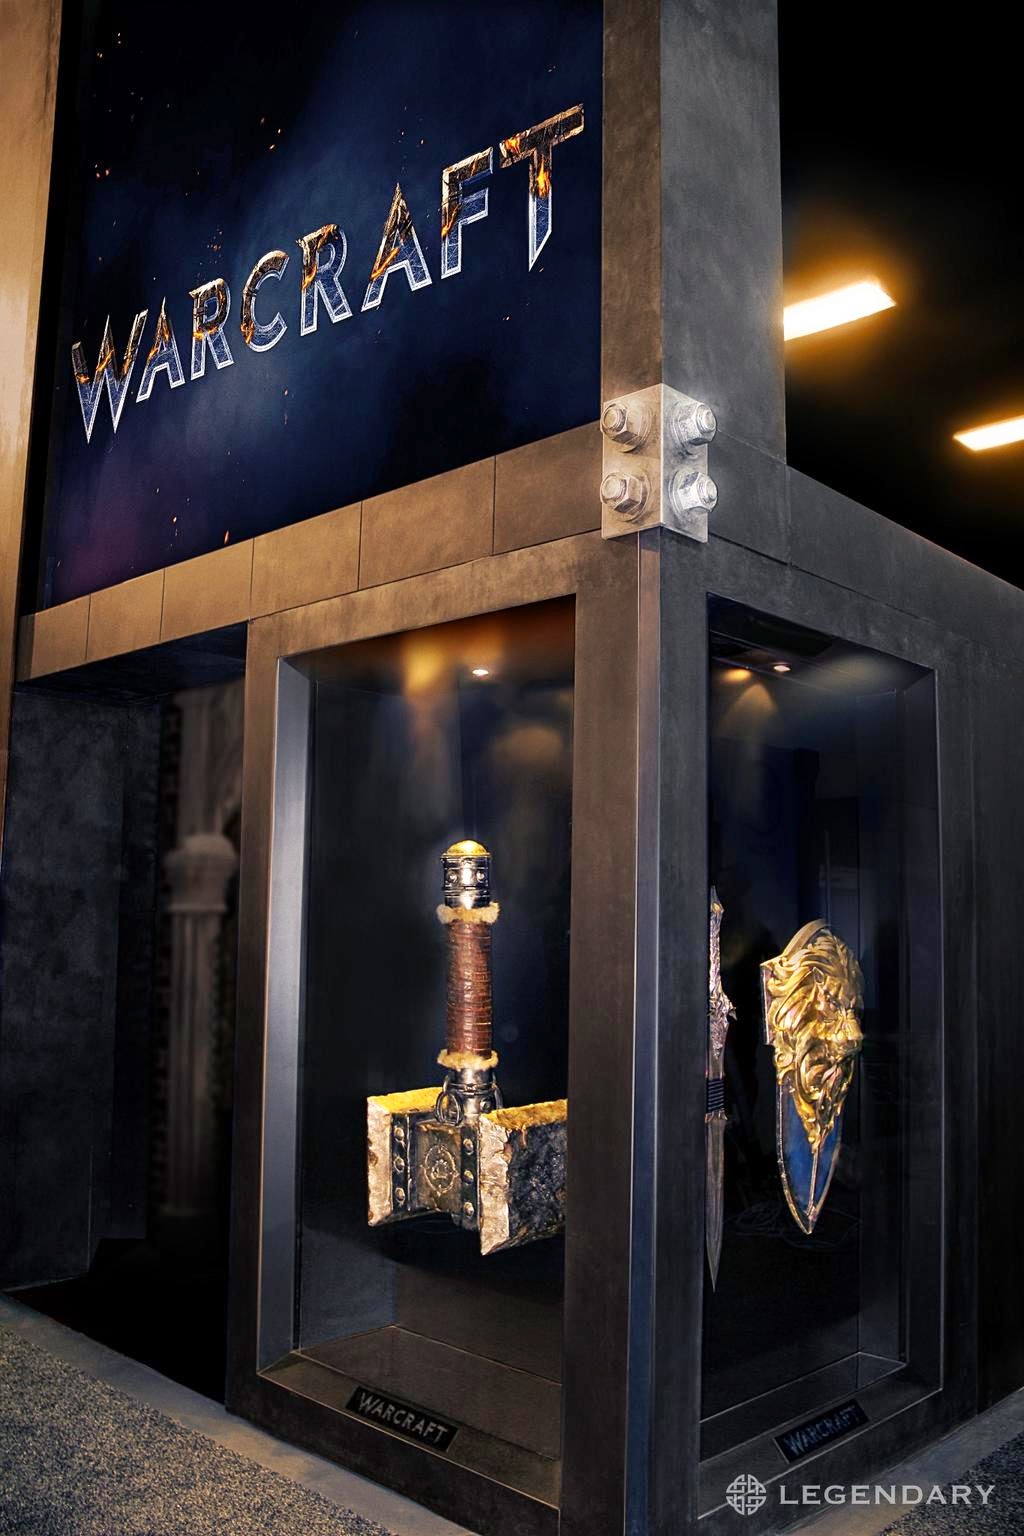 Warcraft 映画ロゴと映画の小道具 映画 Movie